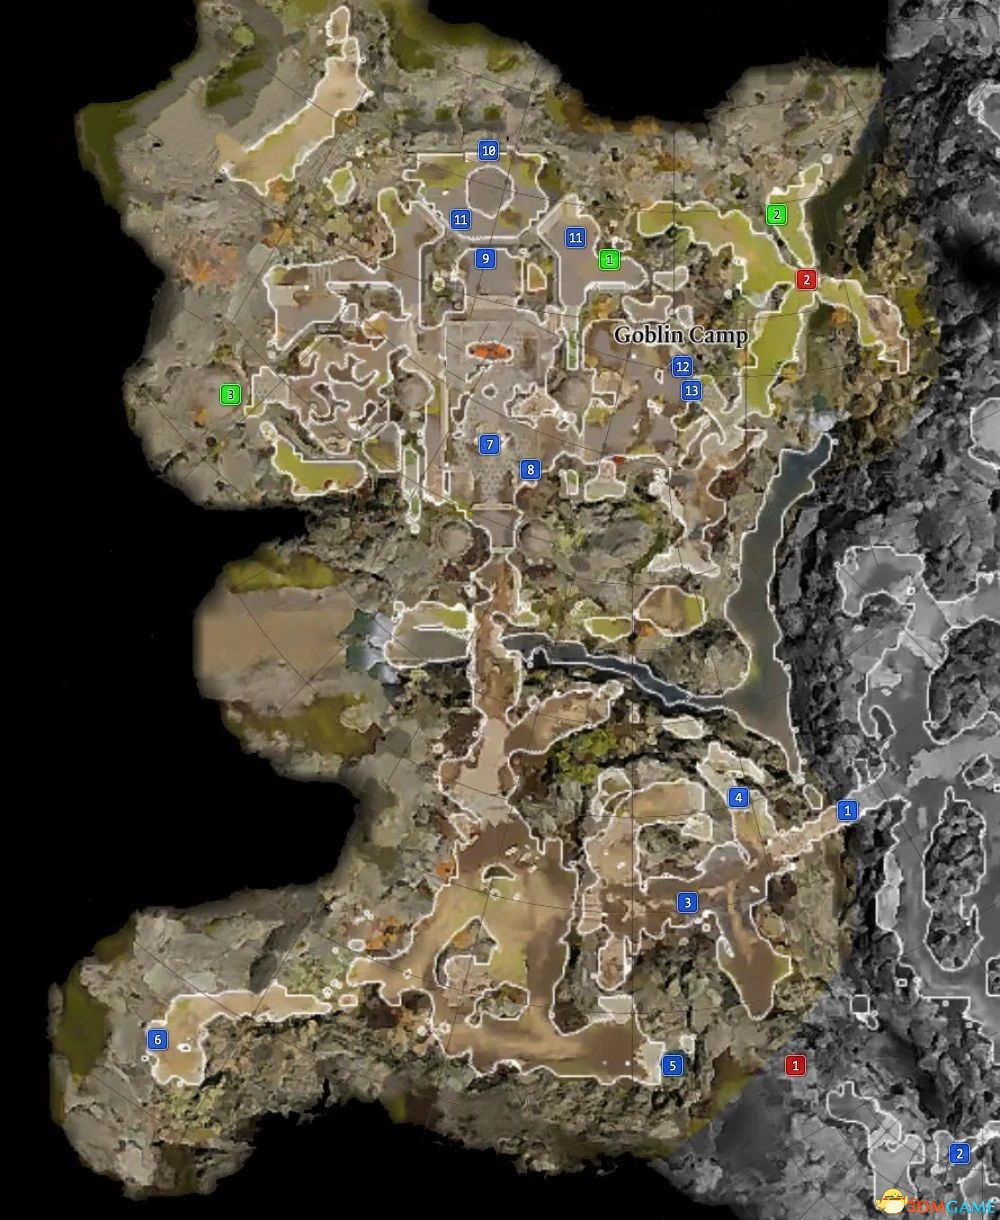 《博德之门3》全地图攻略 任务地图隐秘地点NPC位置